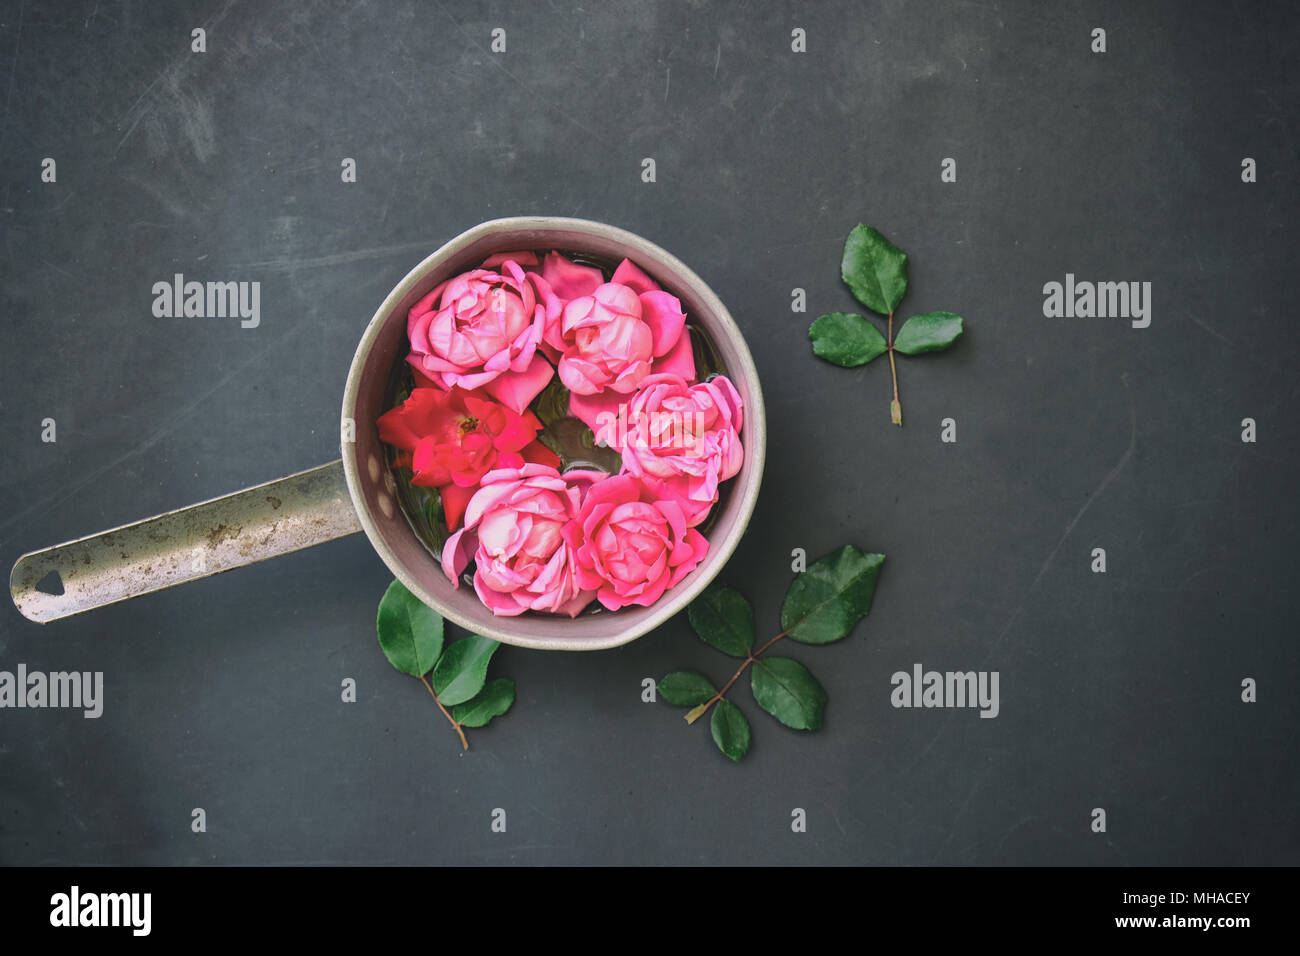 Romantisch rosa Rose Bild zeigt Rosen als Blumenschmuck gegen Vintage schwarzen Hintergrund. Stockfoto